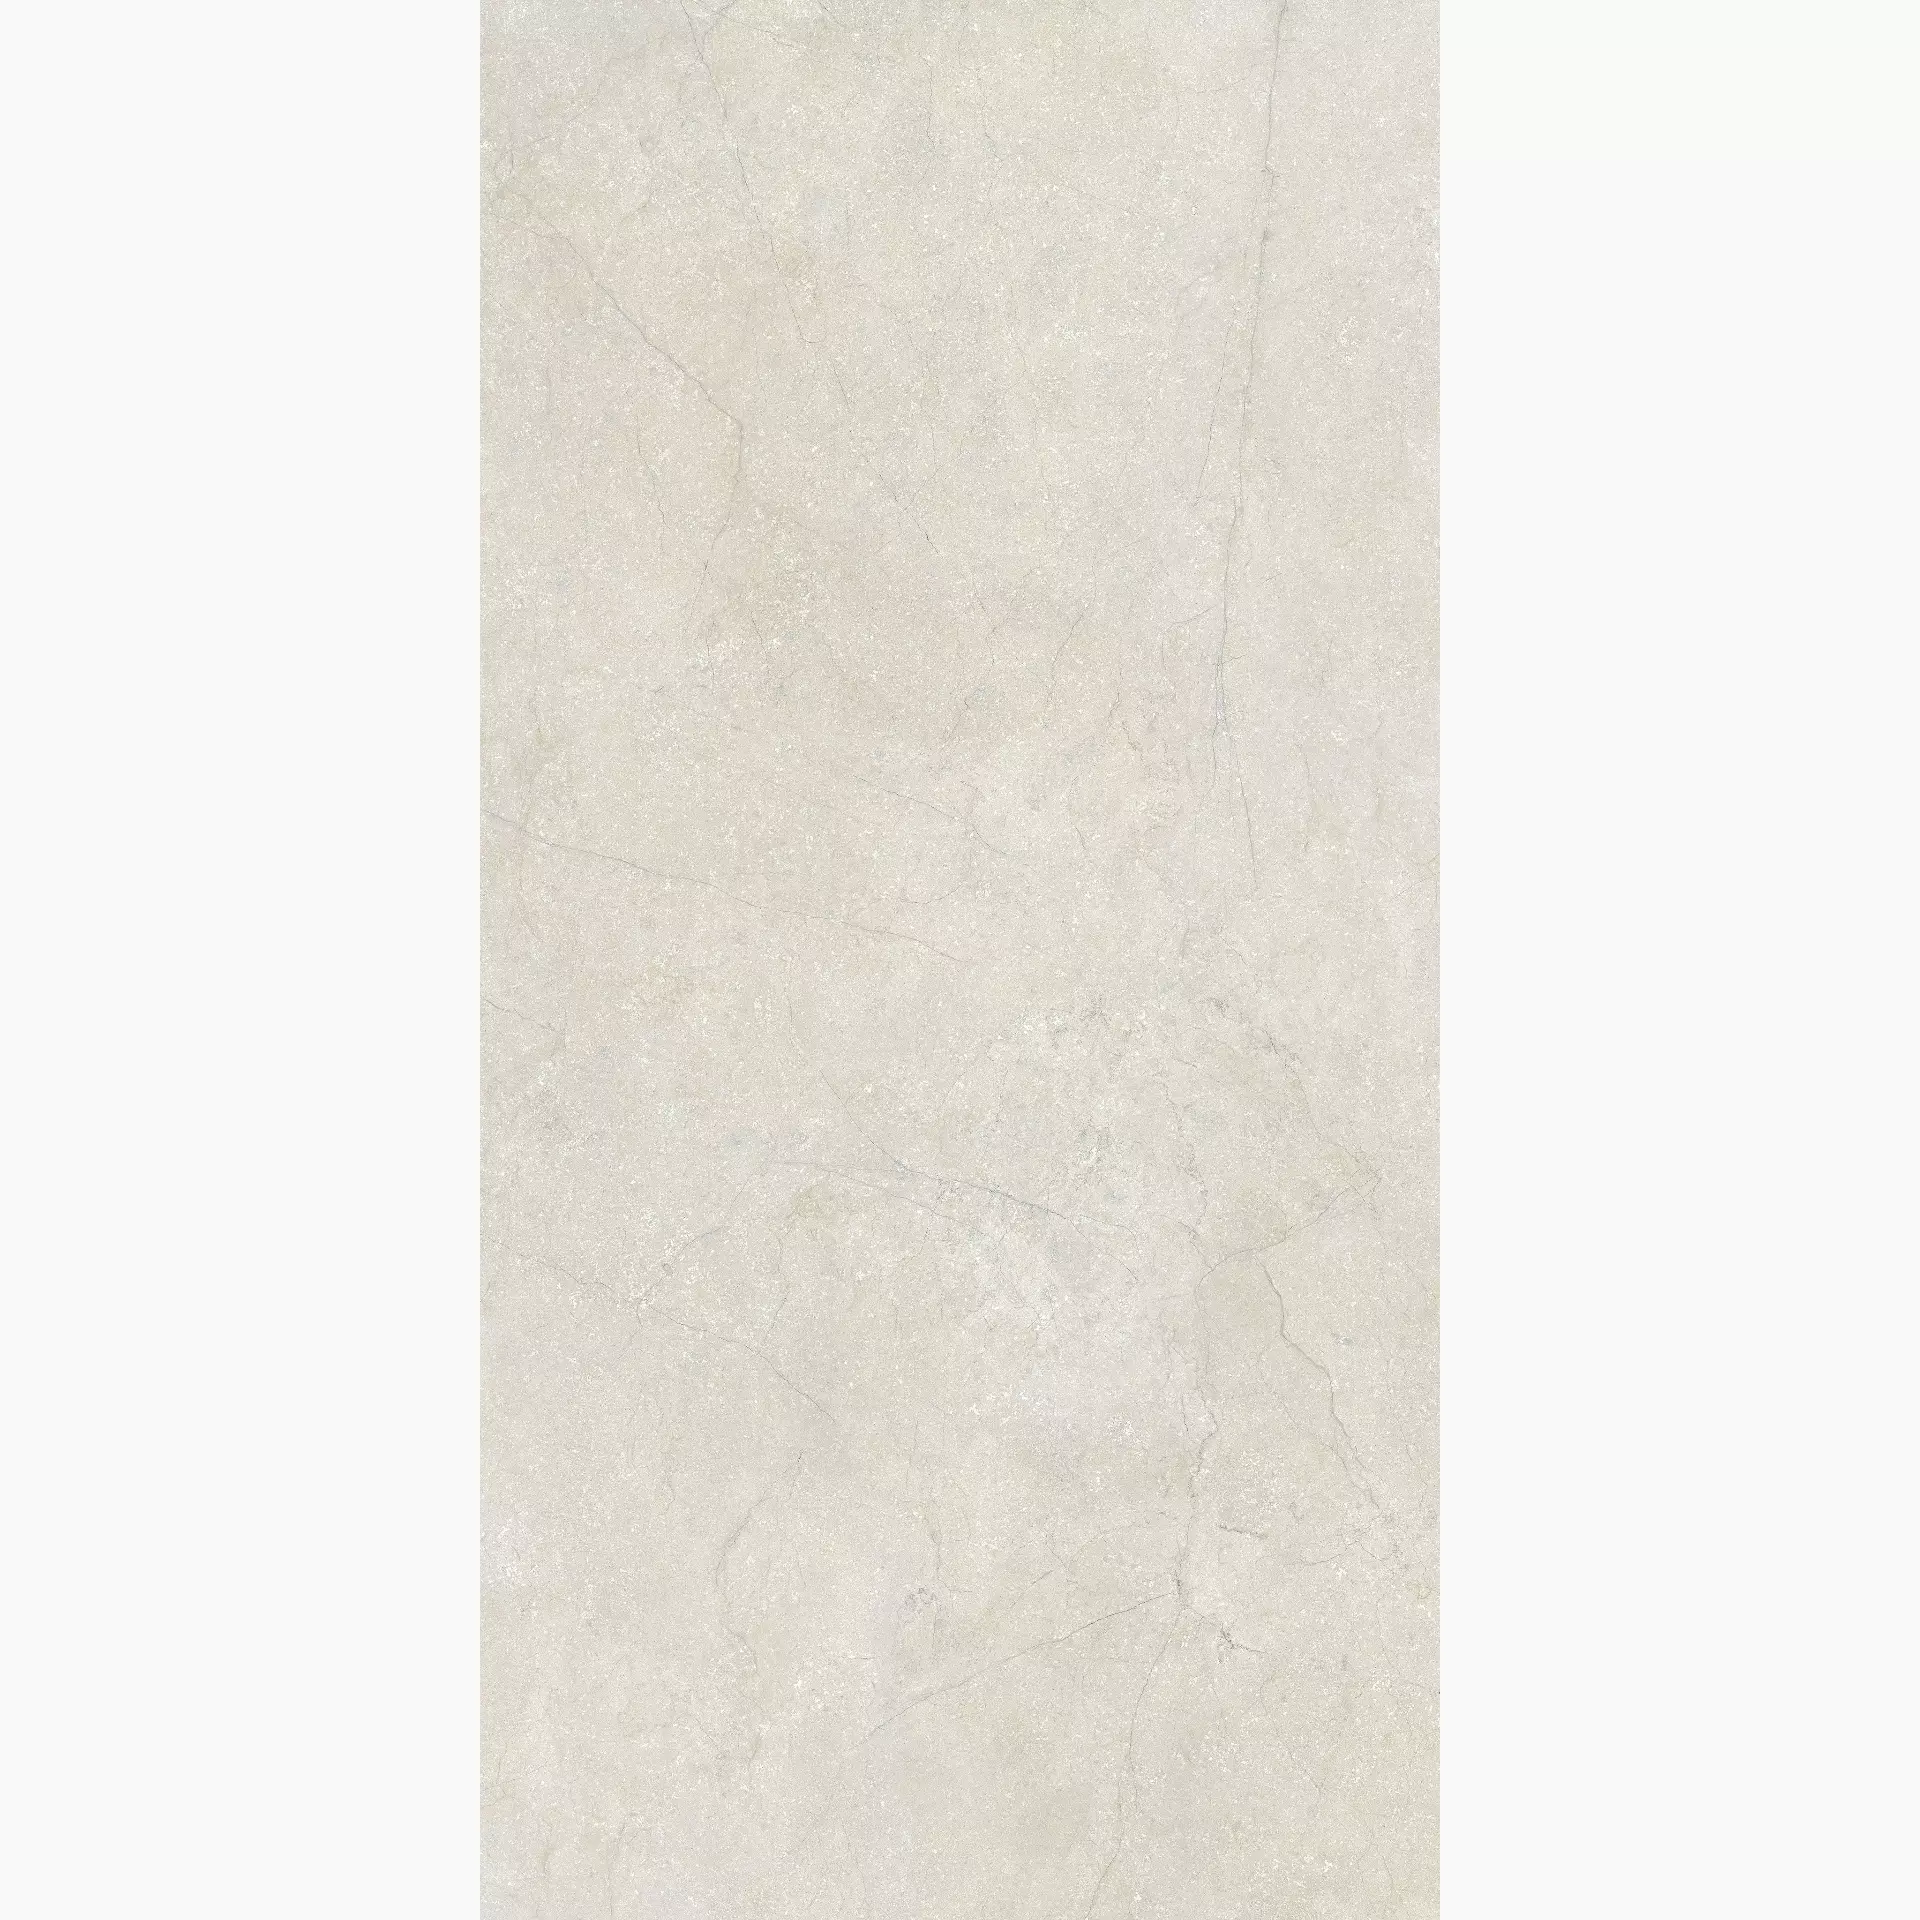 Florim Stone Life Cotton Naturale – Matt Cotton 779201 matt natur 120x240cm rektifiziert 6mm